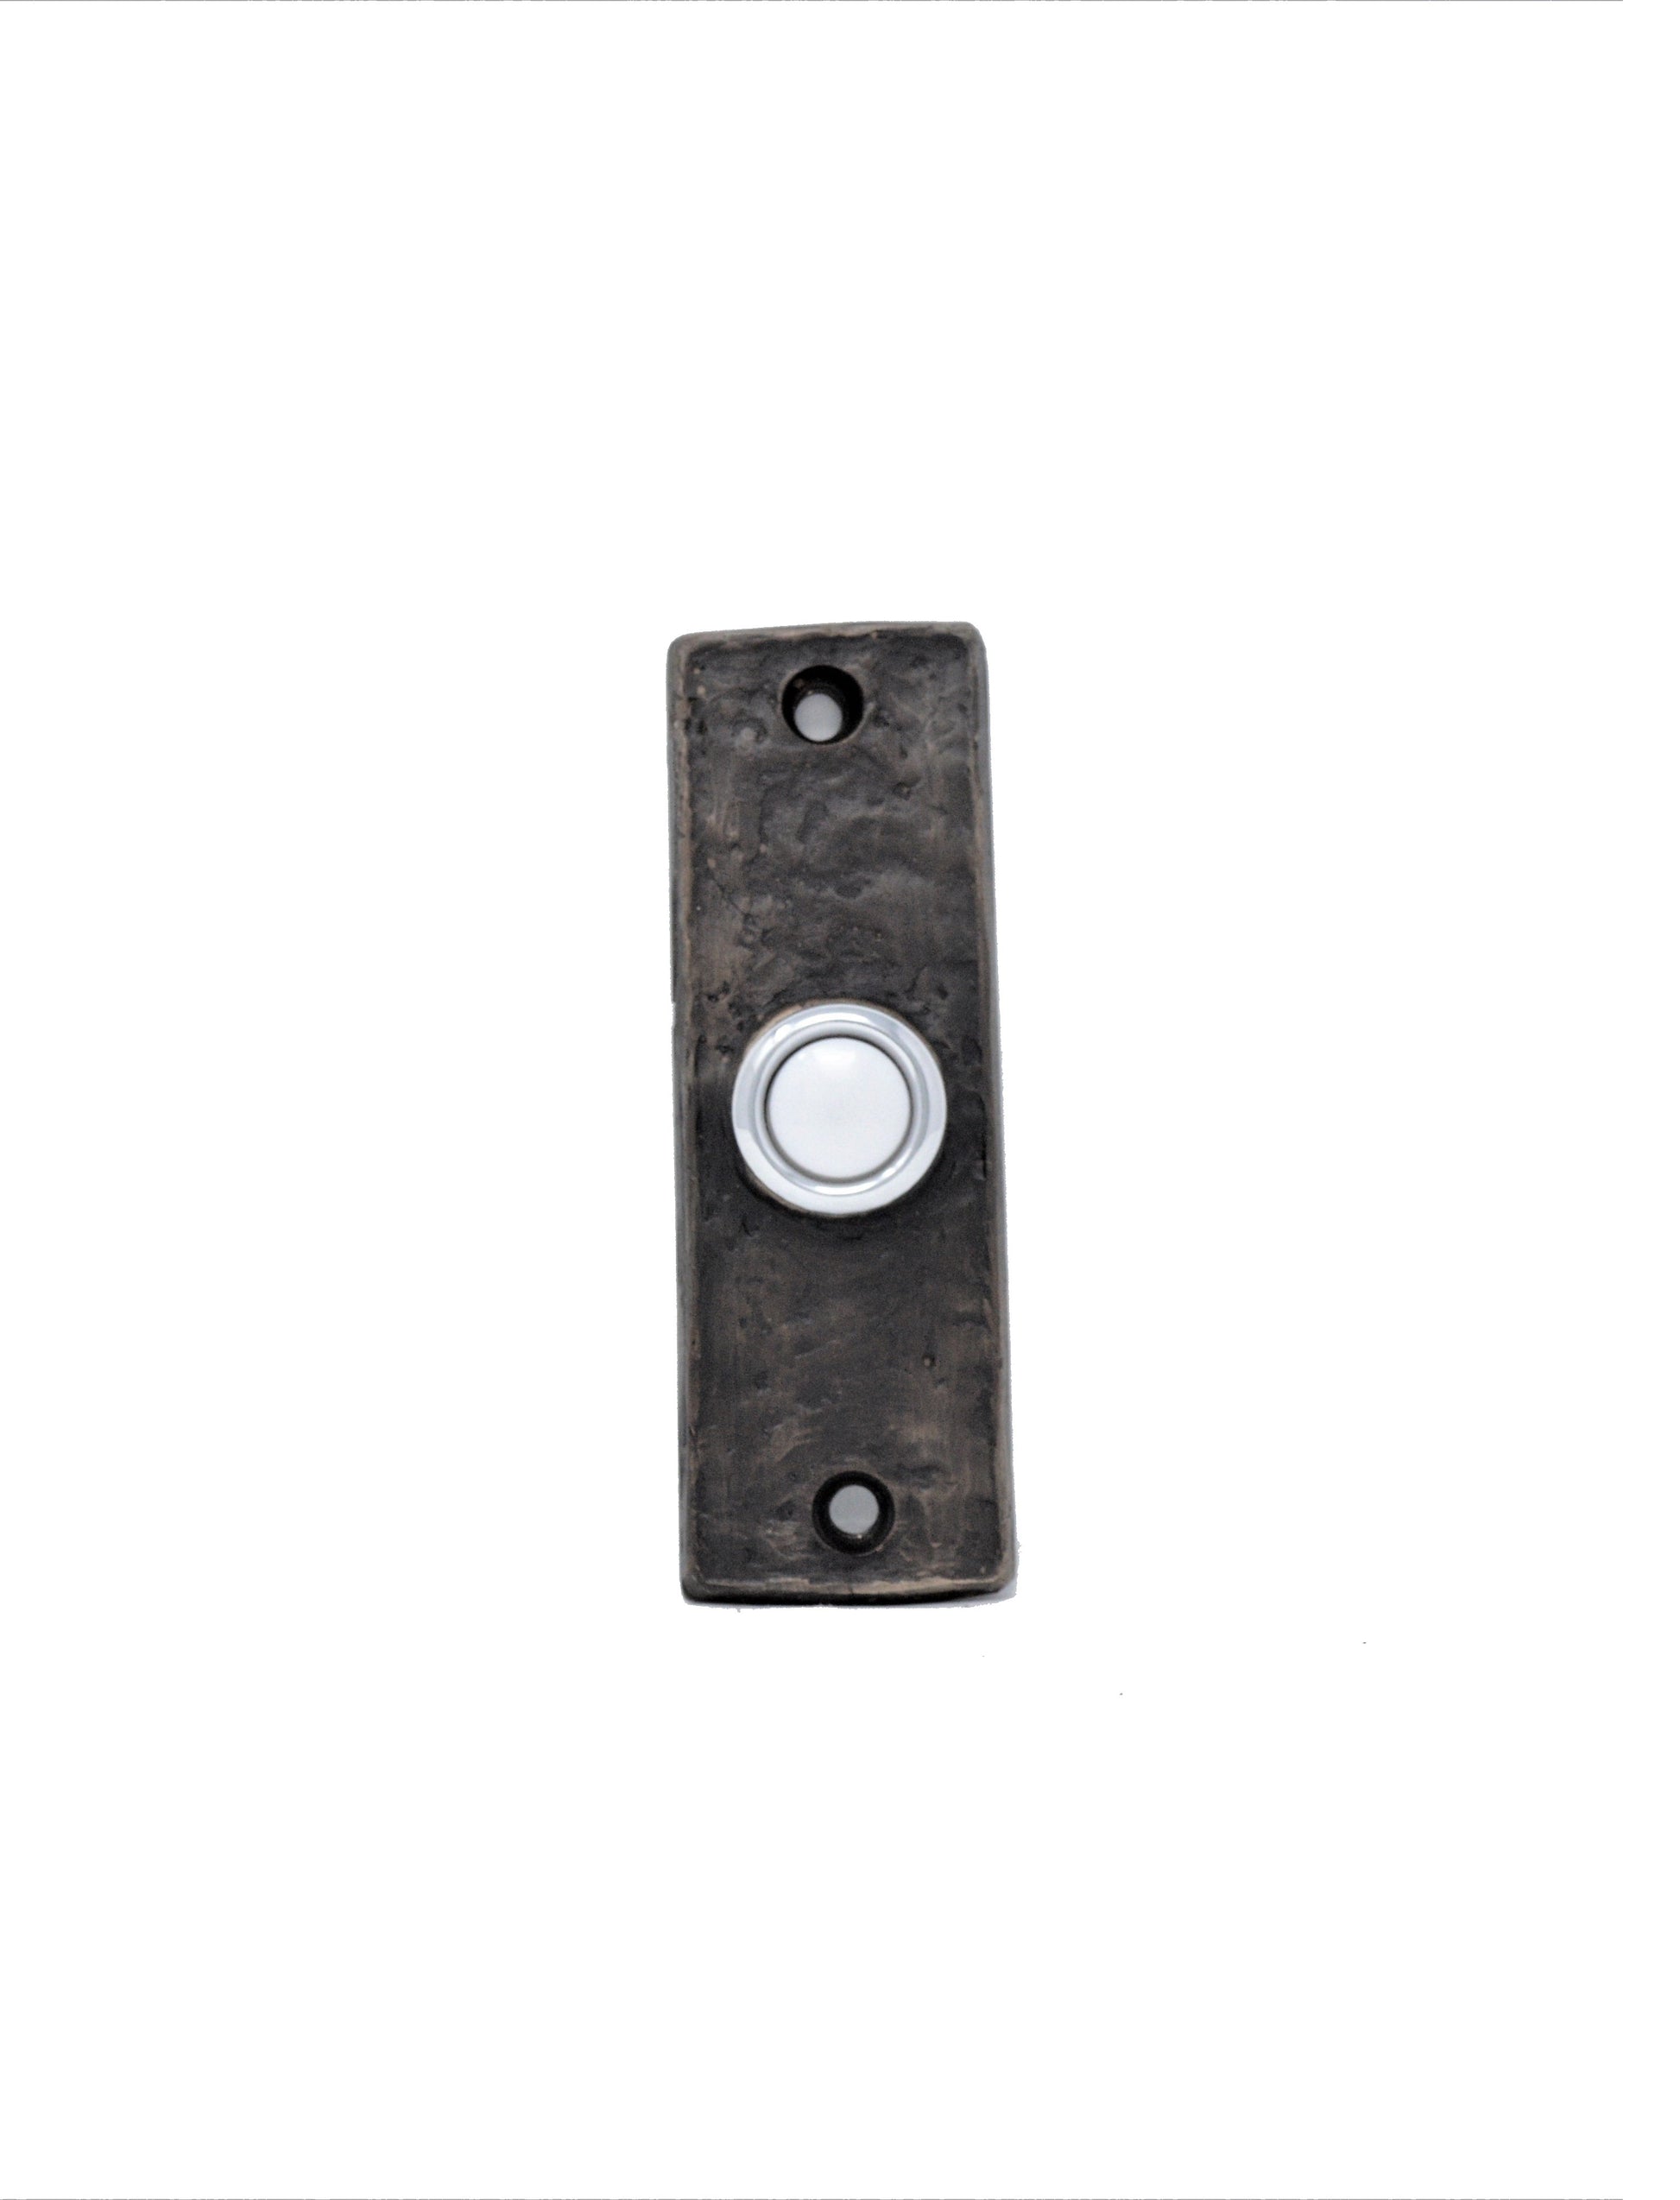 Slim classic bronze doorbell